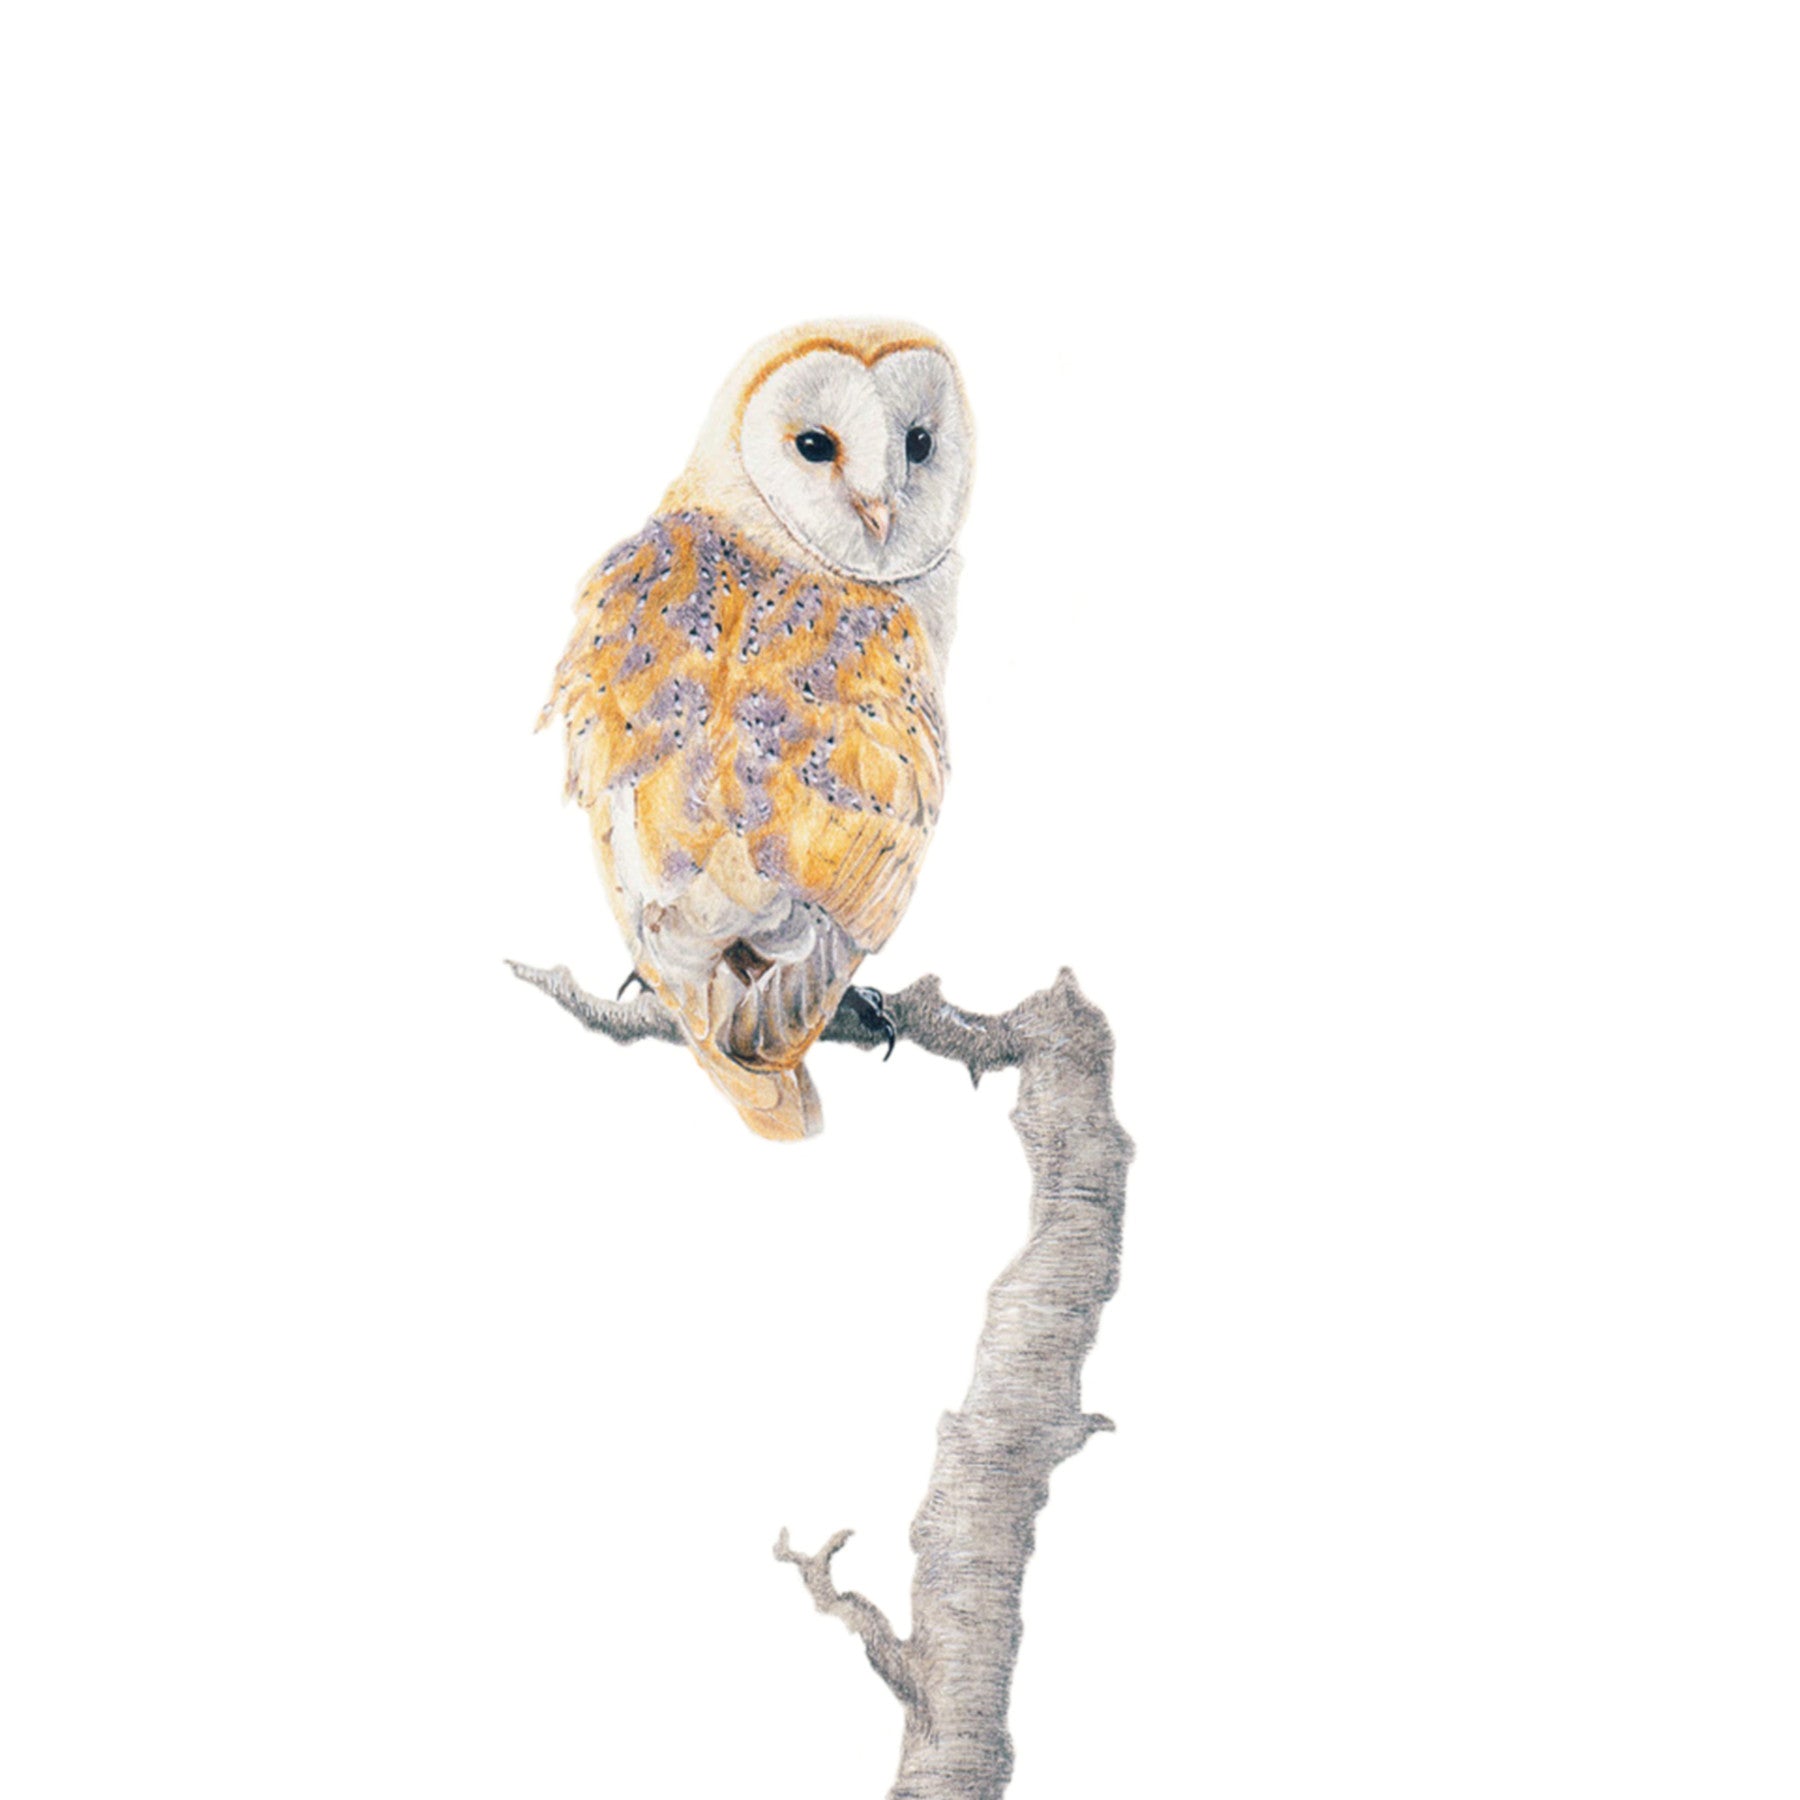 Barn Owl bird artwork